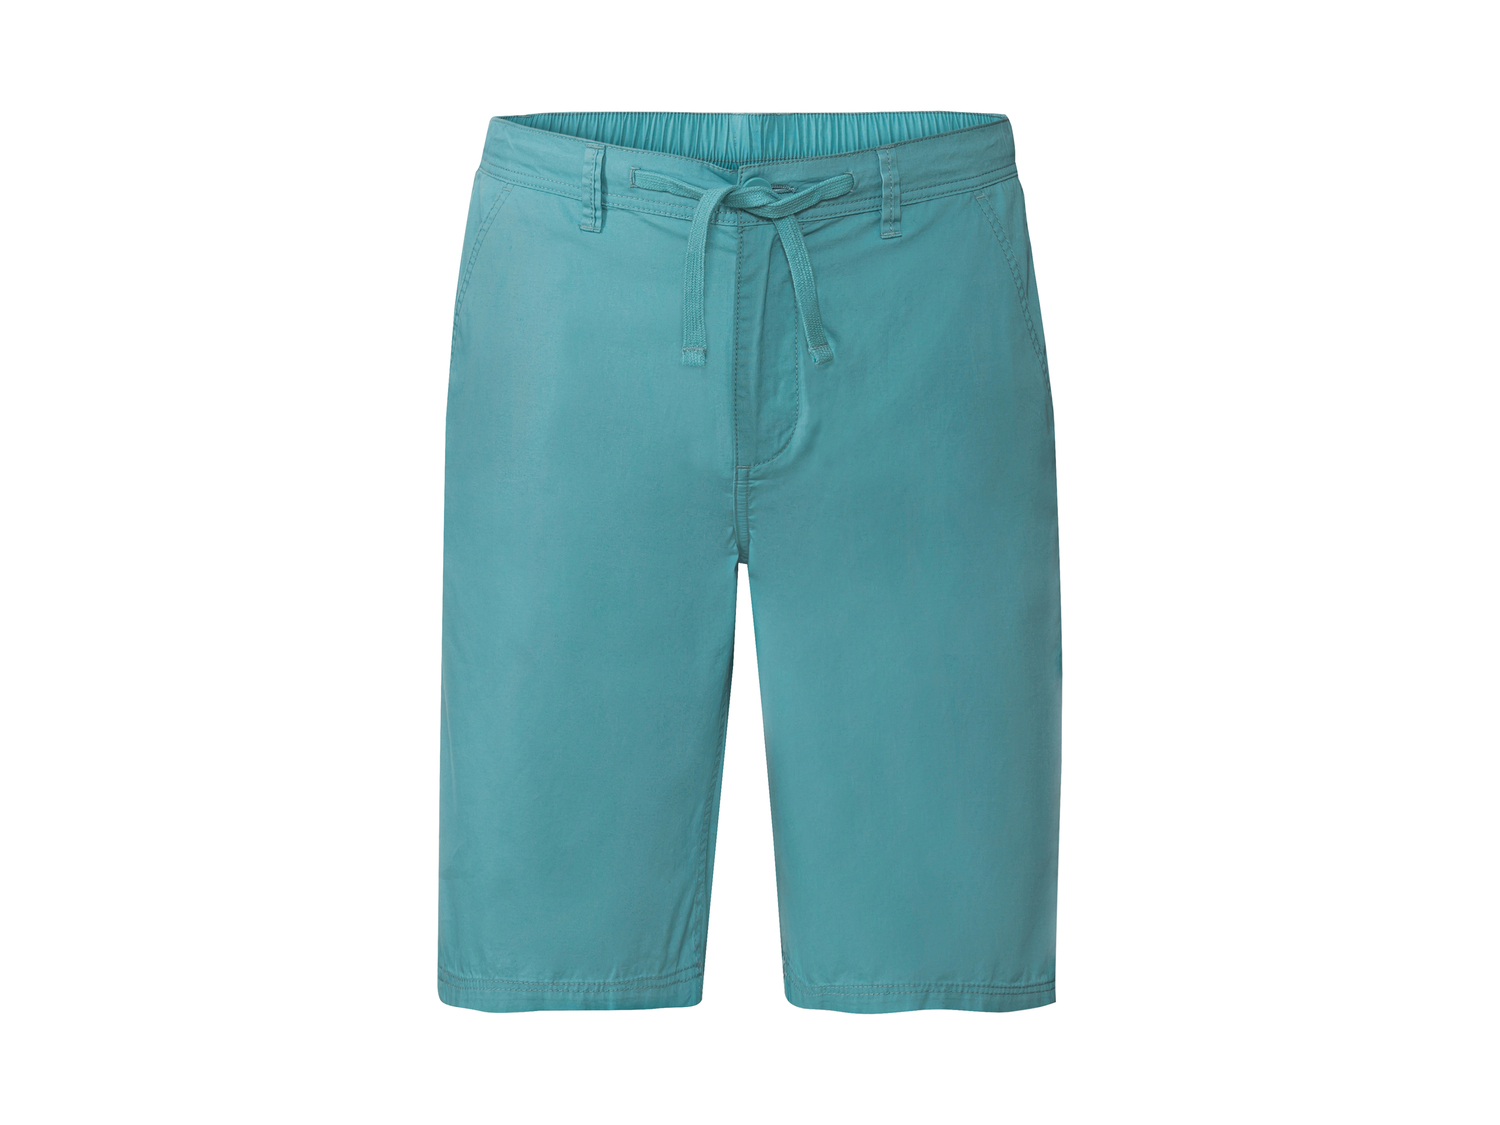 Shorts da uomo Livergy, prezzo 9.99 &#8364; 
Misure: 48-58 
- 
Puro cotone
Taglie ...